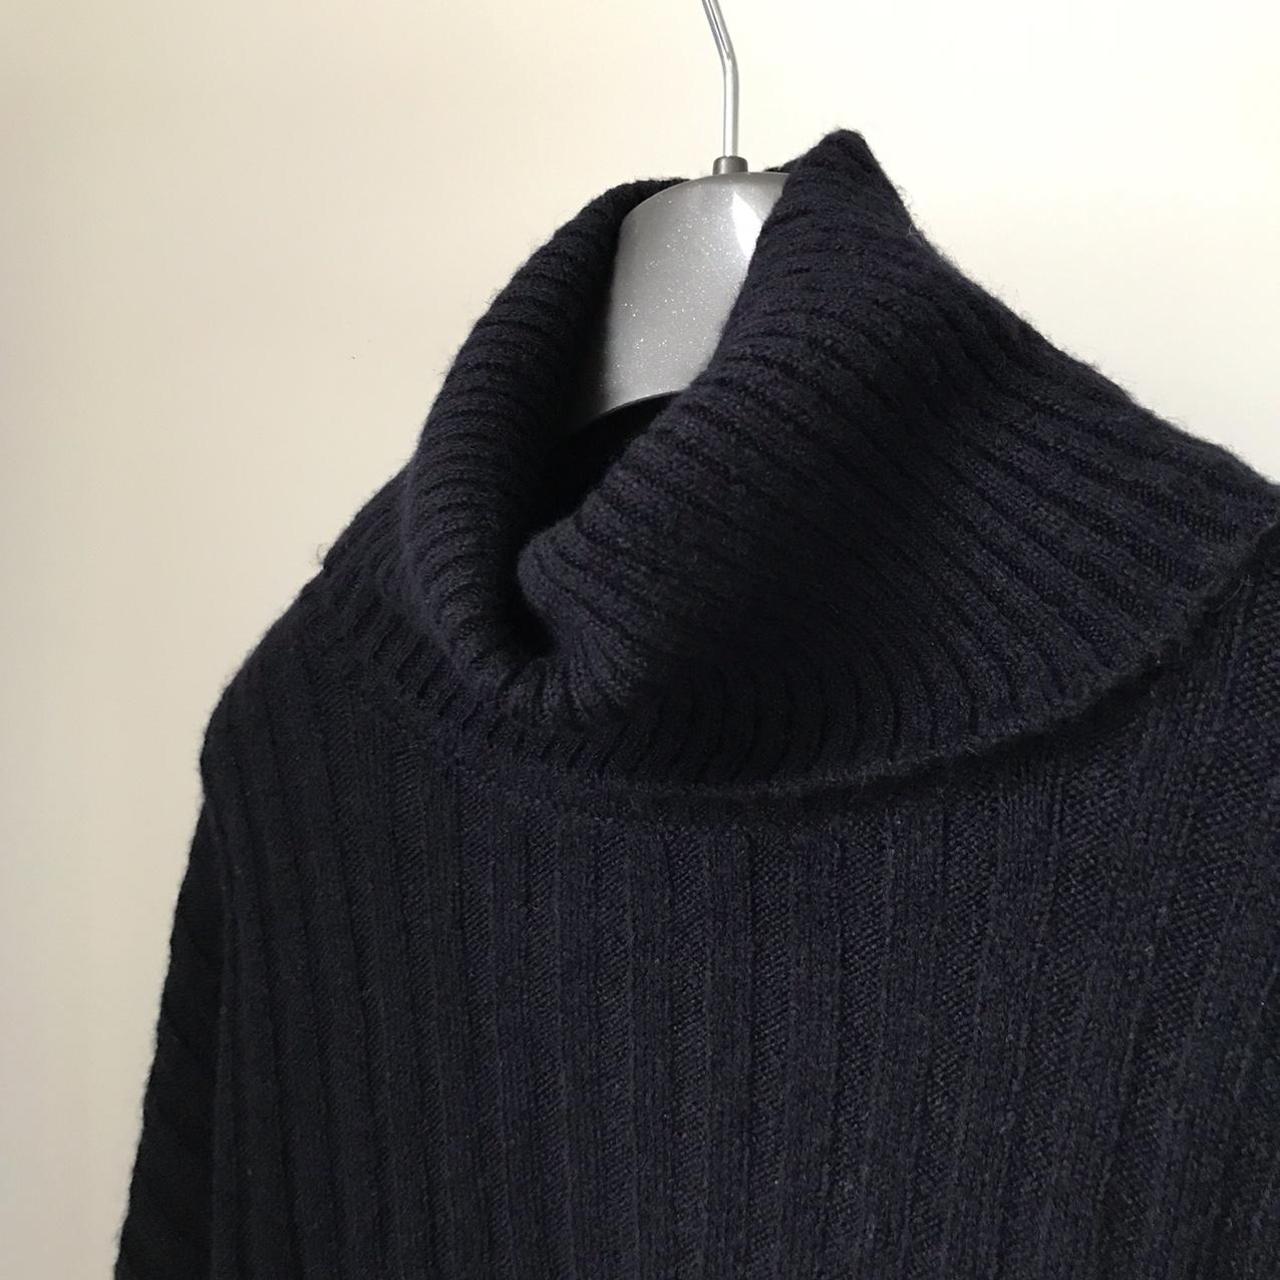 Navy Blue Turtle Neck Long Sleeve knit sweater... - Depop